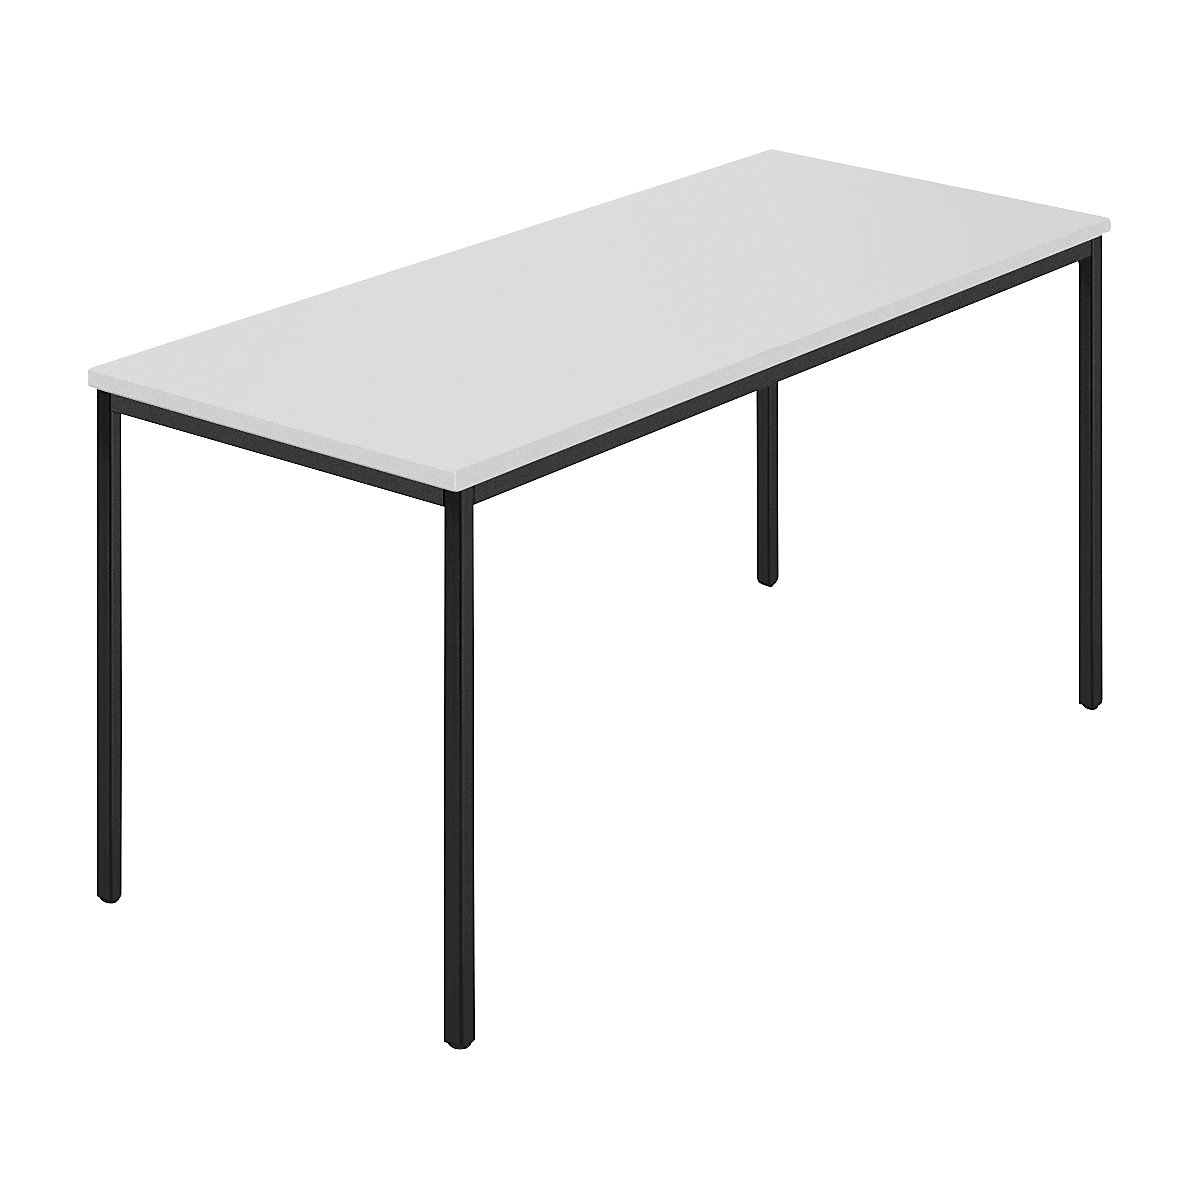 Pravokotna miza, štirikotna cev s premazom